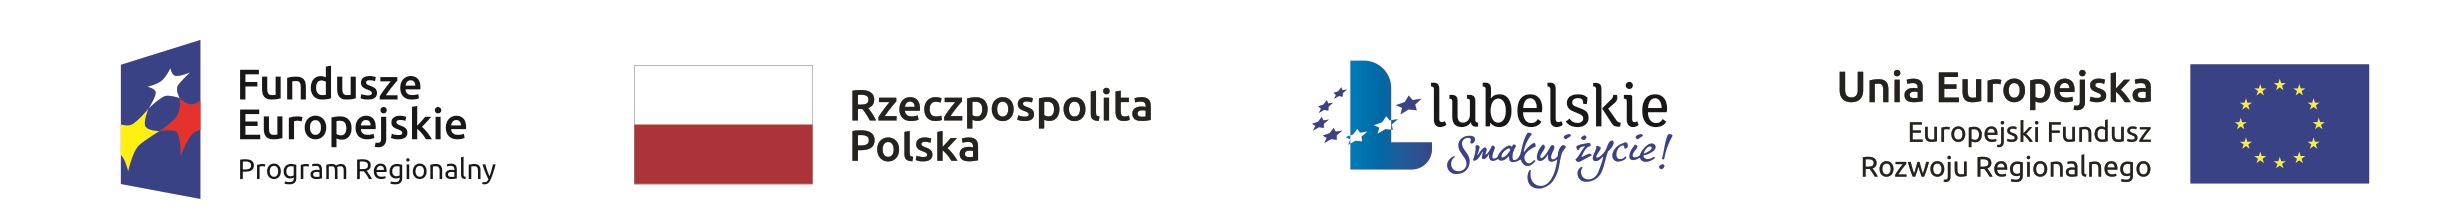 Logo Fundusze Europejskie, Rzeczpospolita Polska, Lubelskie - smakuj życie, Unia Europejska